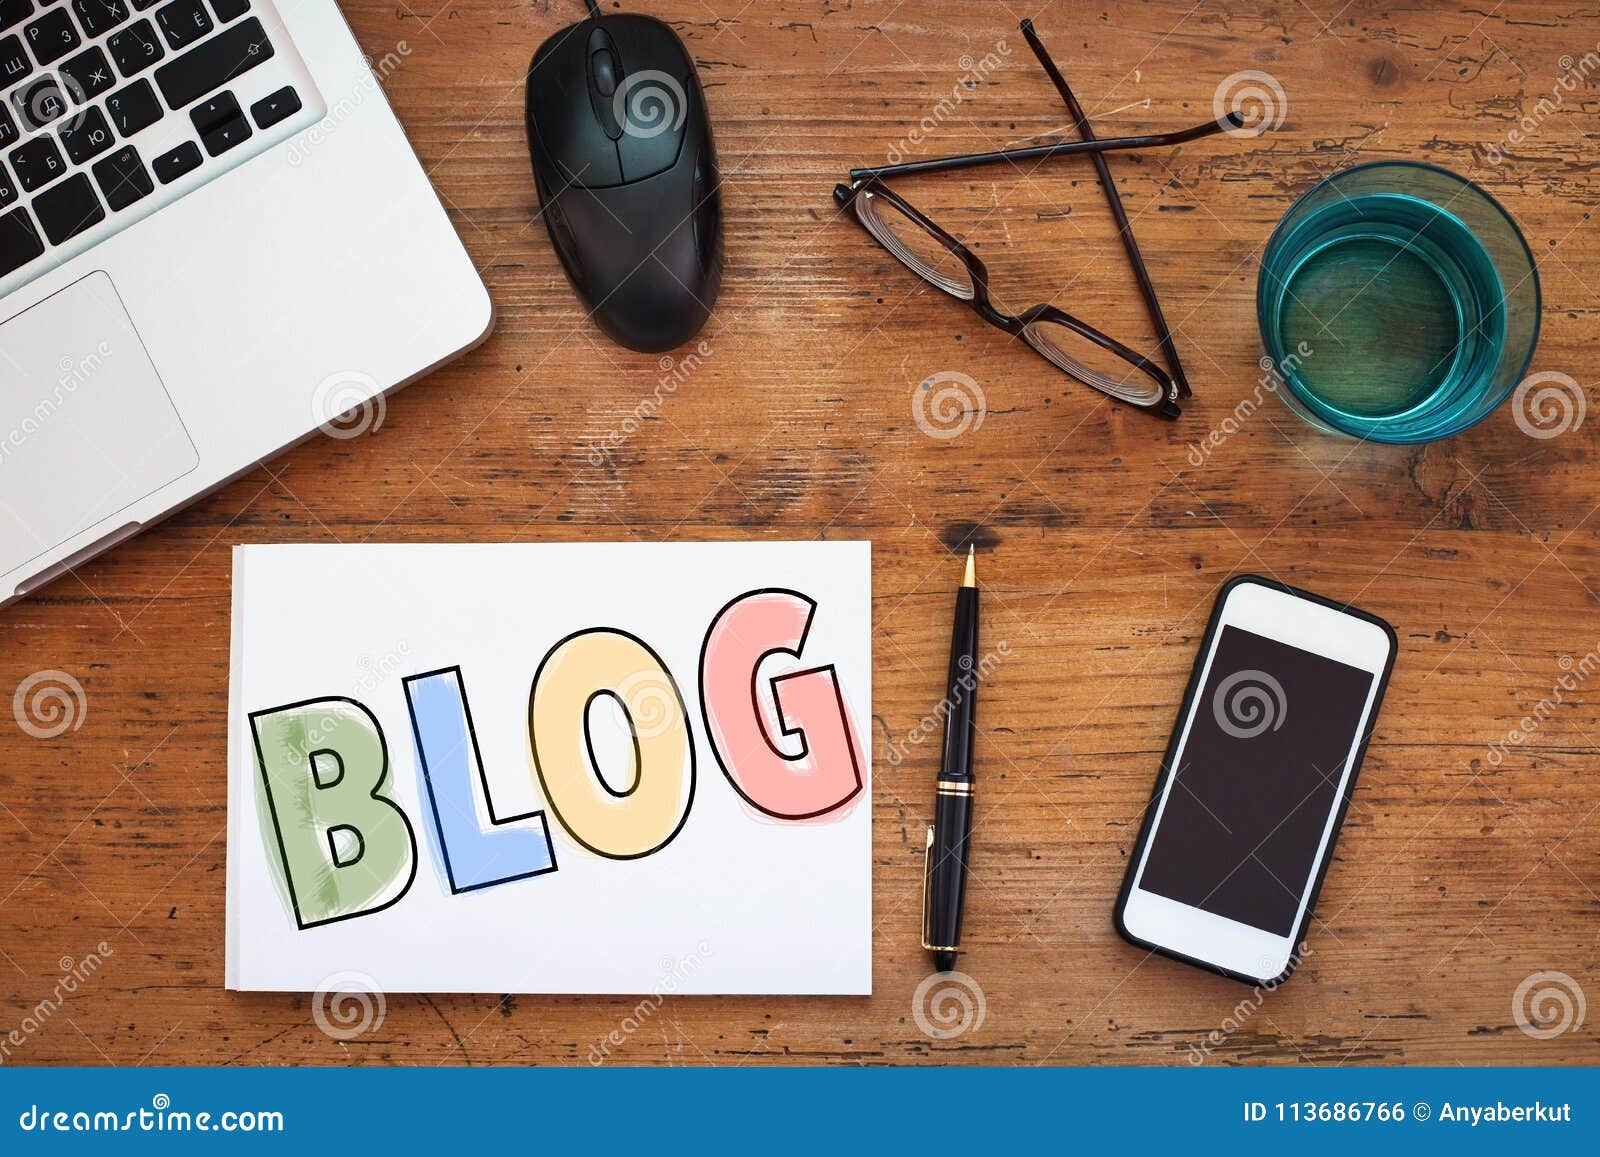 blog, blogging concept